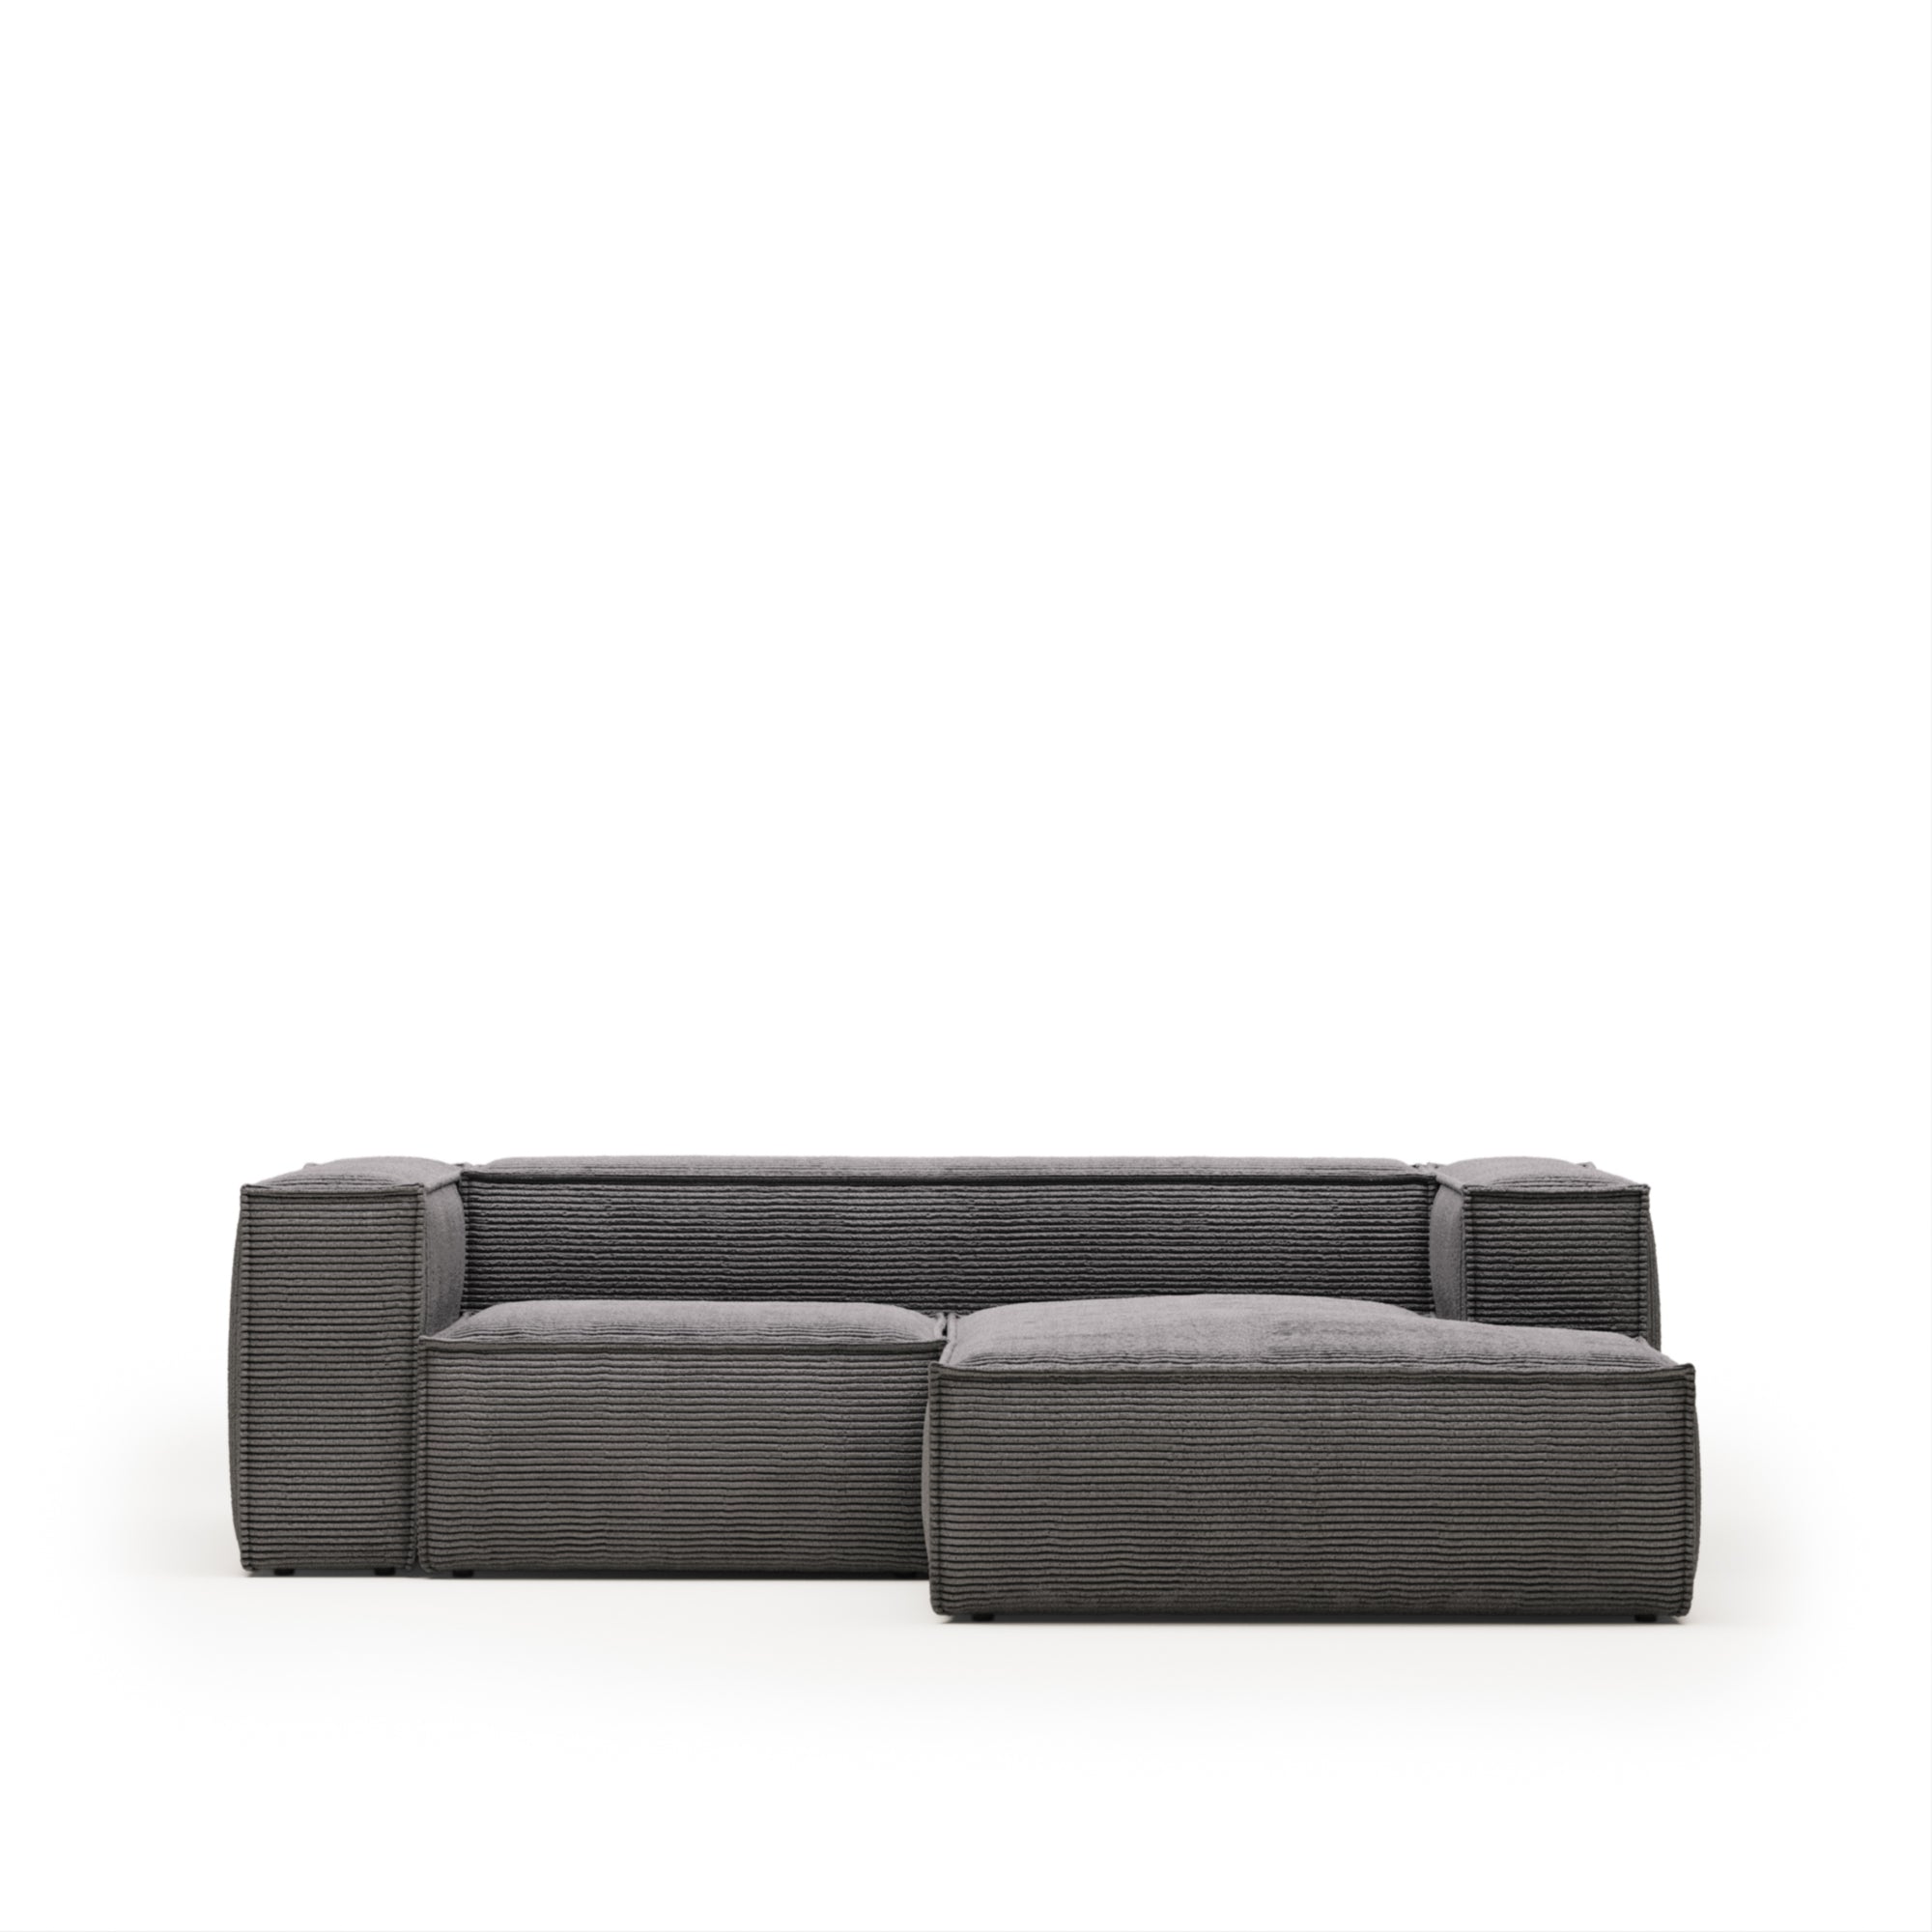 Blok 2 személyes kanapé jobb oldali fekvőfotellel, szürke széles varrású kordbársonyból, 240 cm